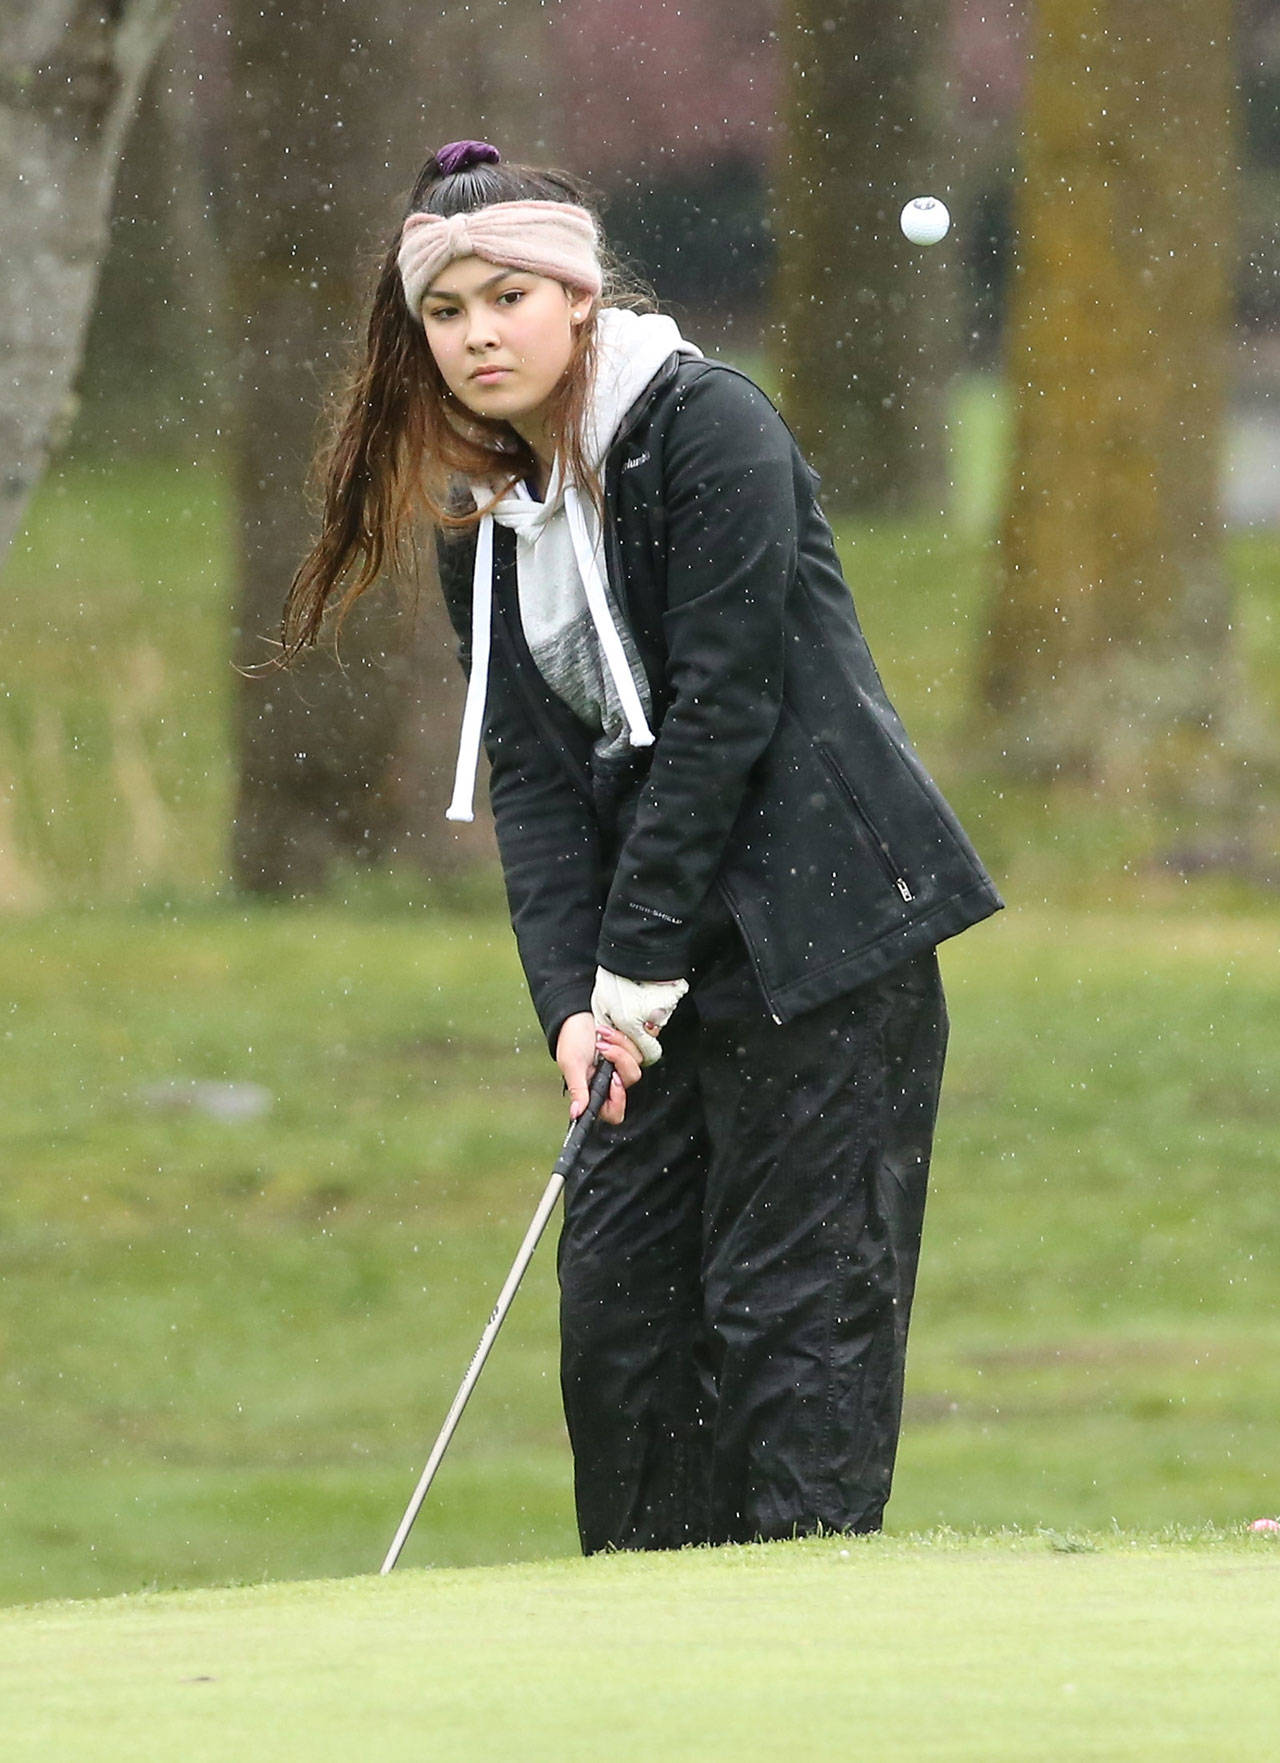 Natasha Decker is one of four returning seniors for the Oak Harbor girls golf team. (Photo by John Fisken)